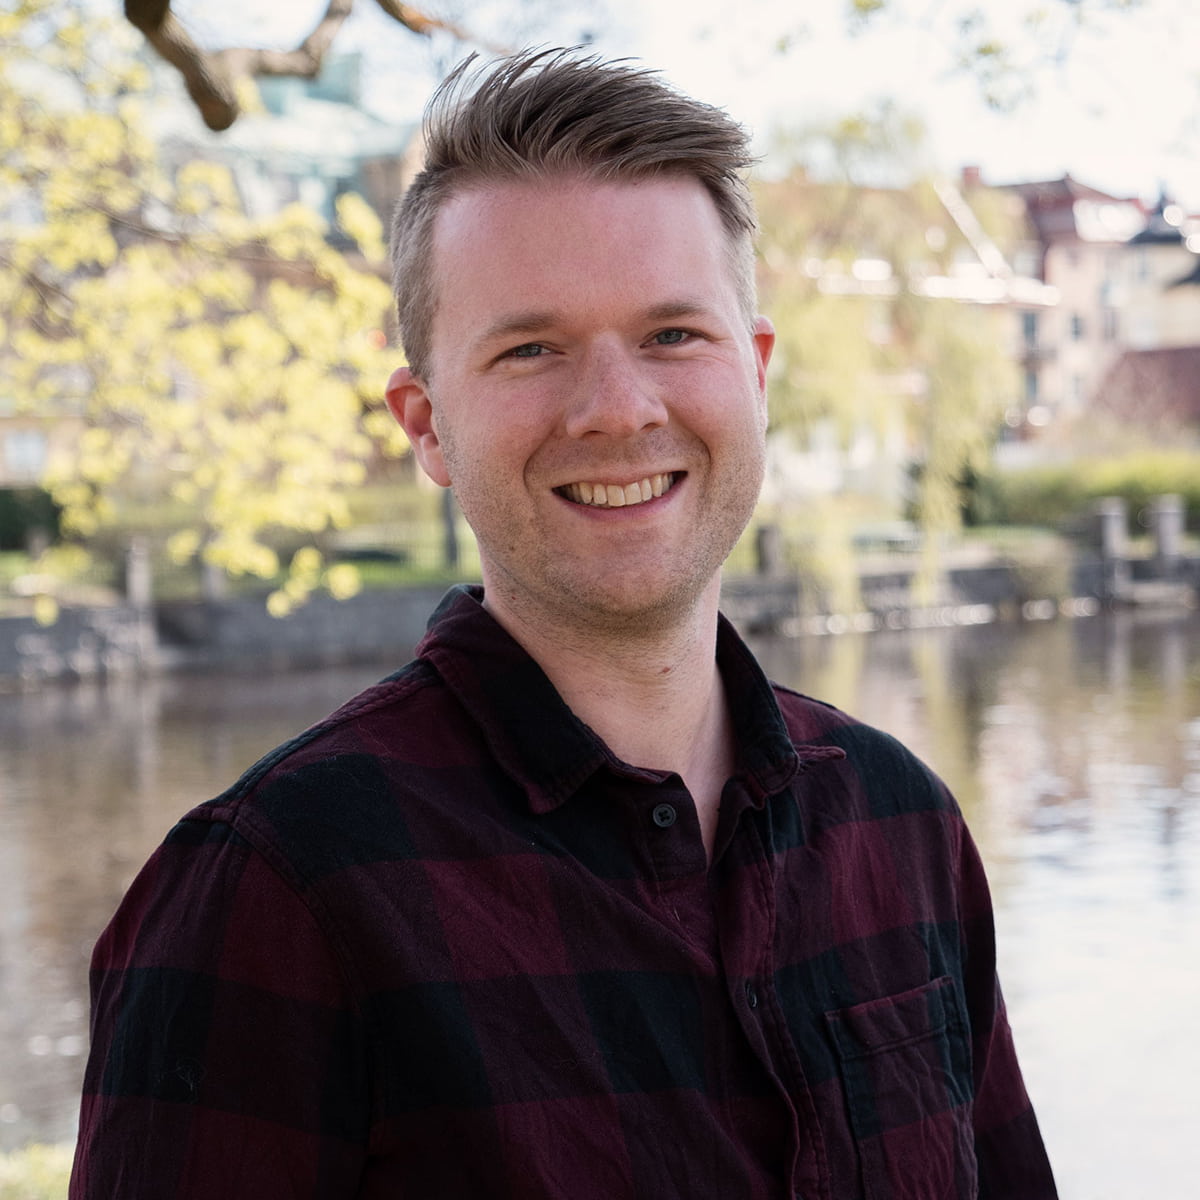 Profilbild på Jon Jander i Örebro